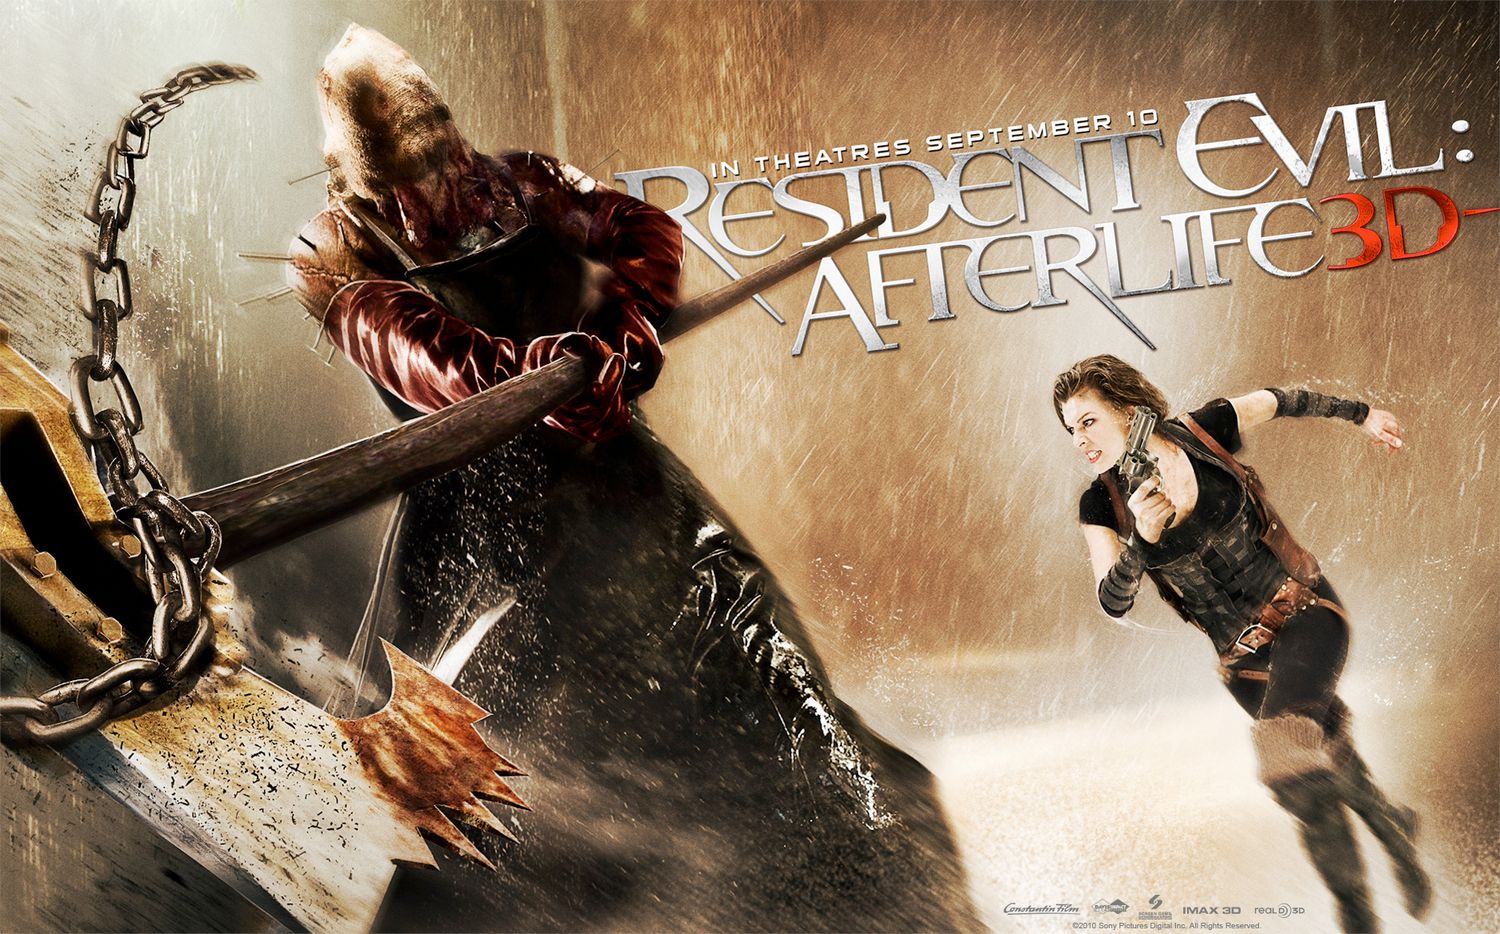 Snackpre Posters De Resident Evil Afterlife